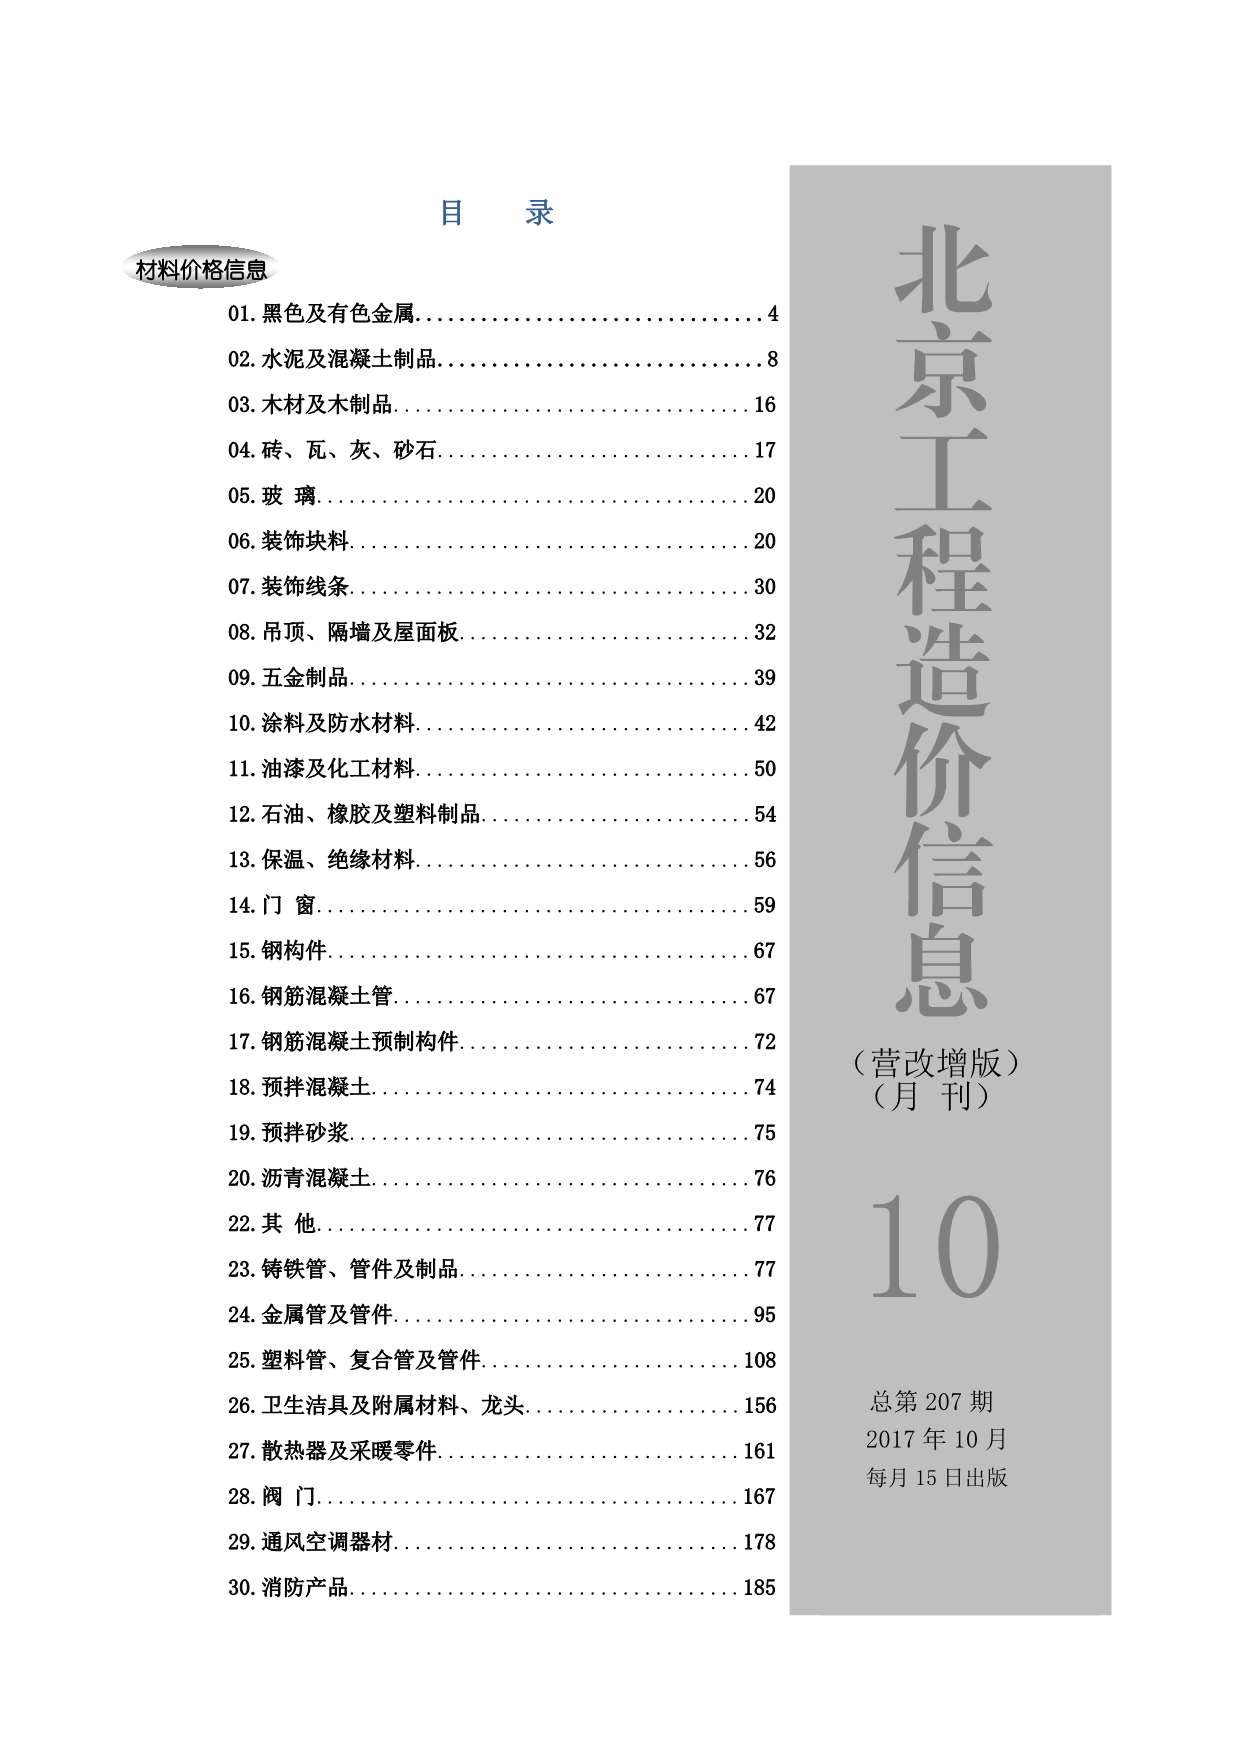 北京市2017年10月工程信息价_北京市信息价期刊PDF扫描件电子版